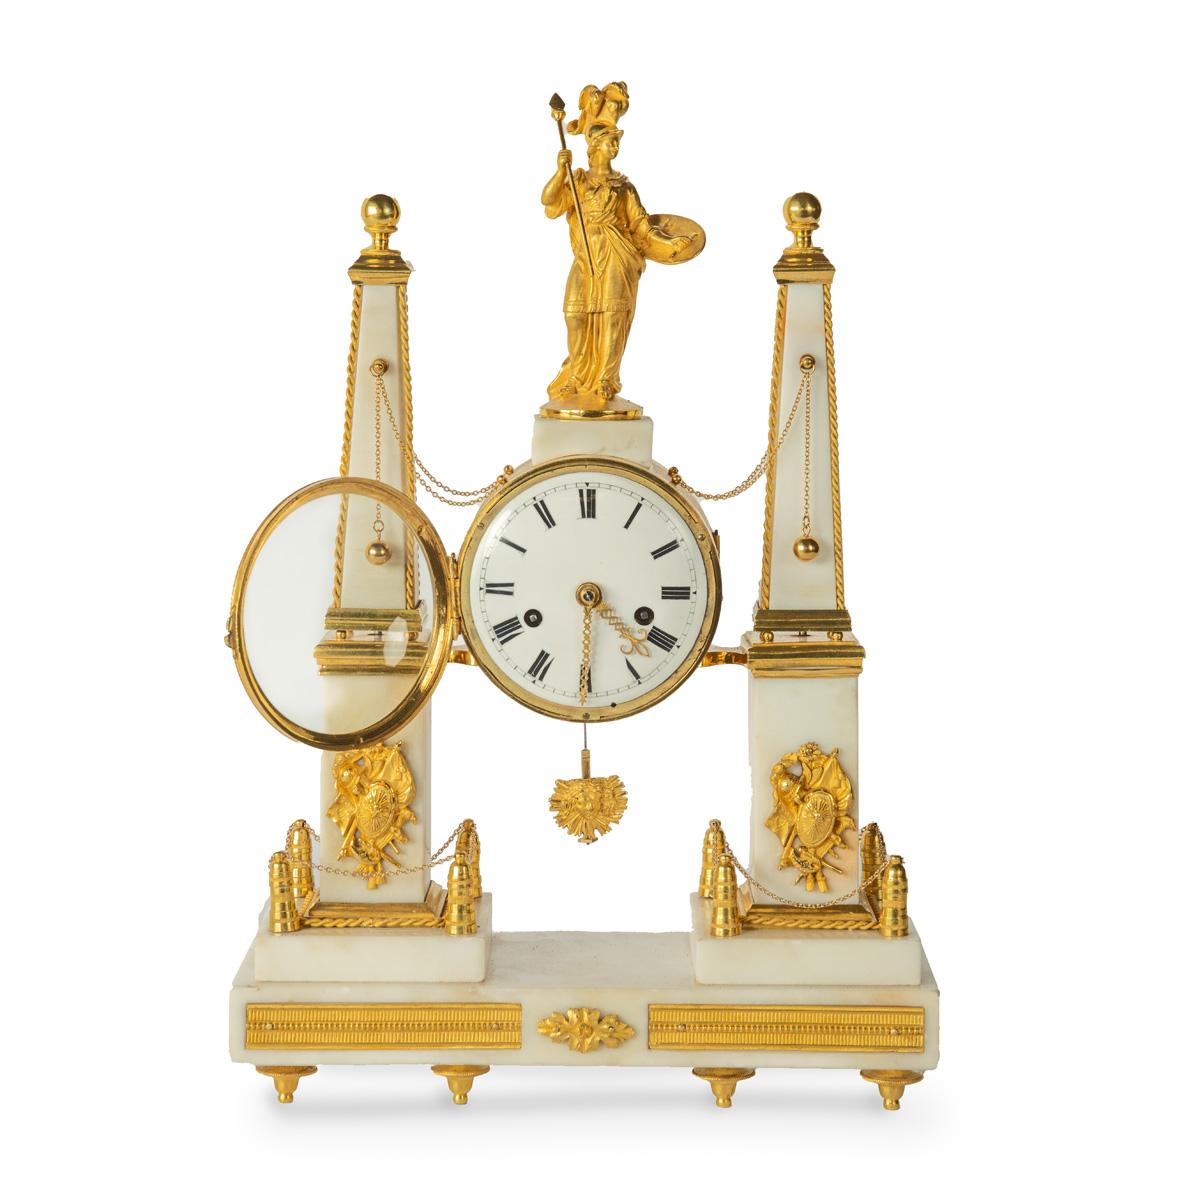 Pendule portique en marbre et bronze doré de la fin du style Louis XVI, comprenant une pendule centrale en forme de tambour avec un pendule en forme de soleil, surmontée de la figure dorée d'Athéna portant une armure avec un casque à plumes et un